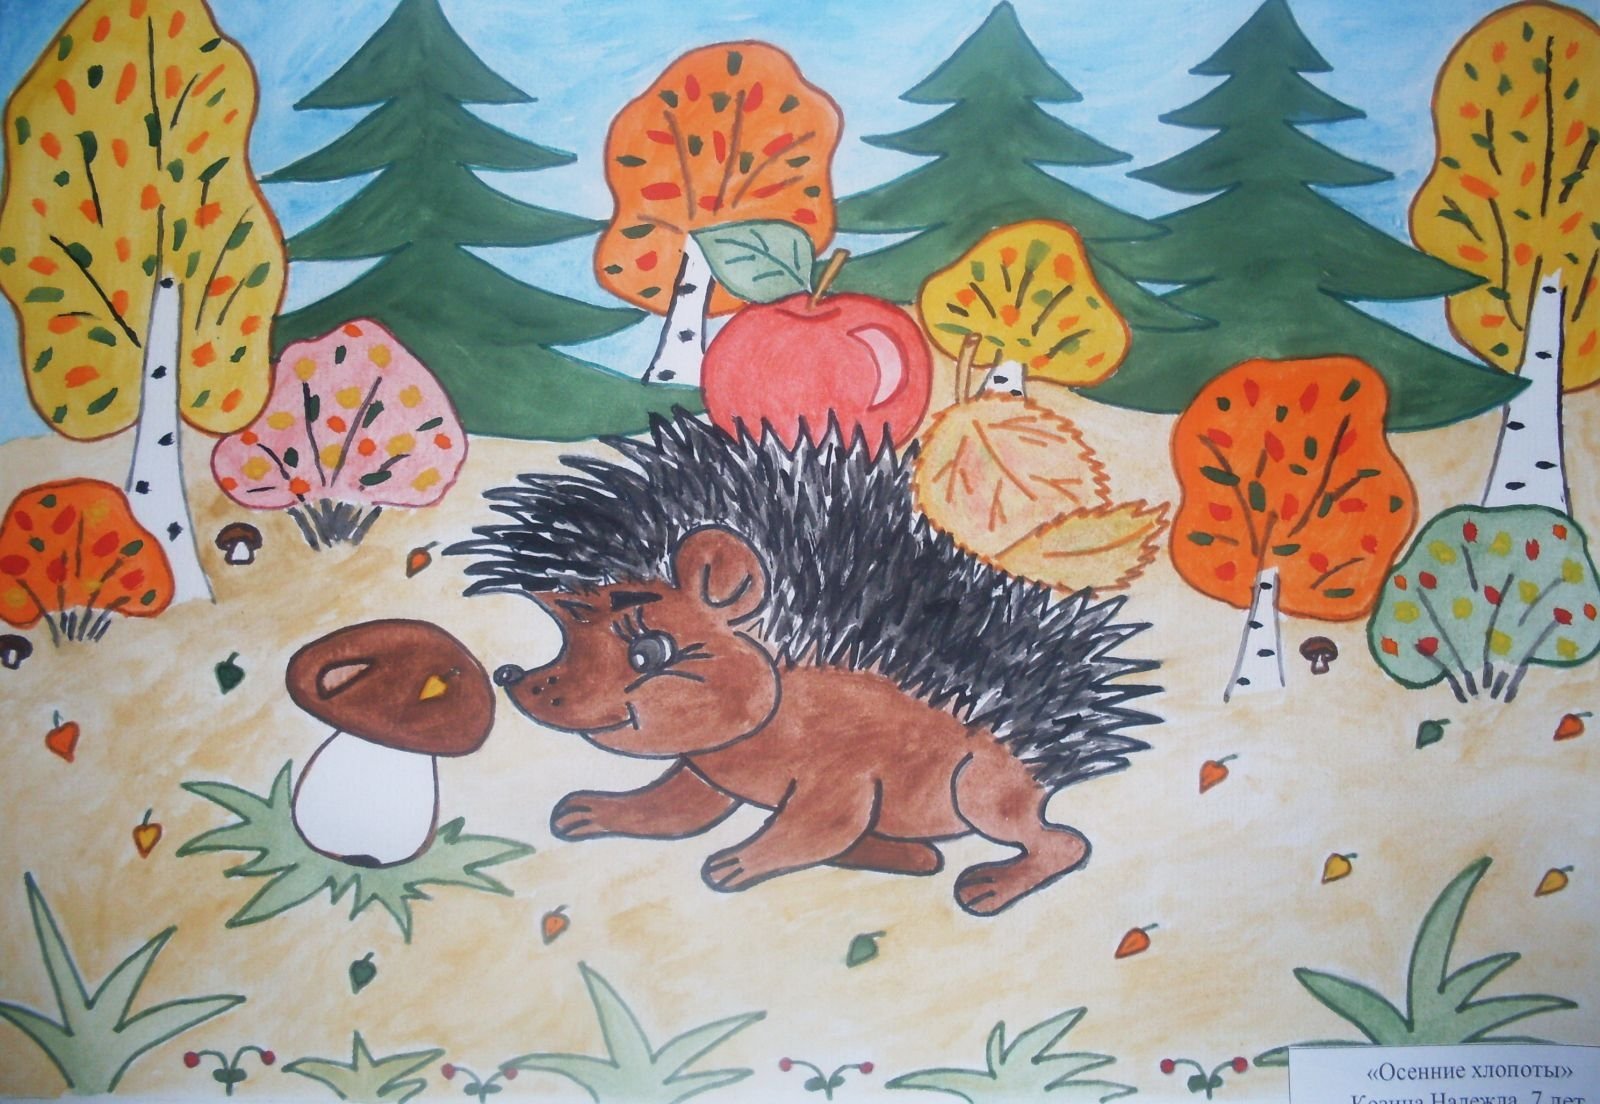 звери в лесу картинки для детей нарисованные